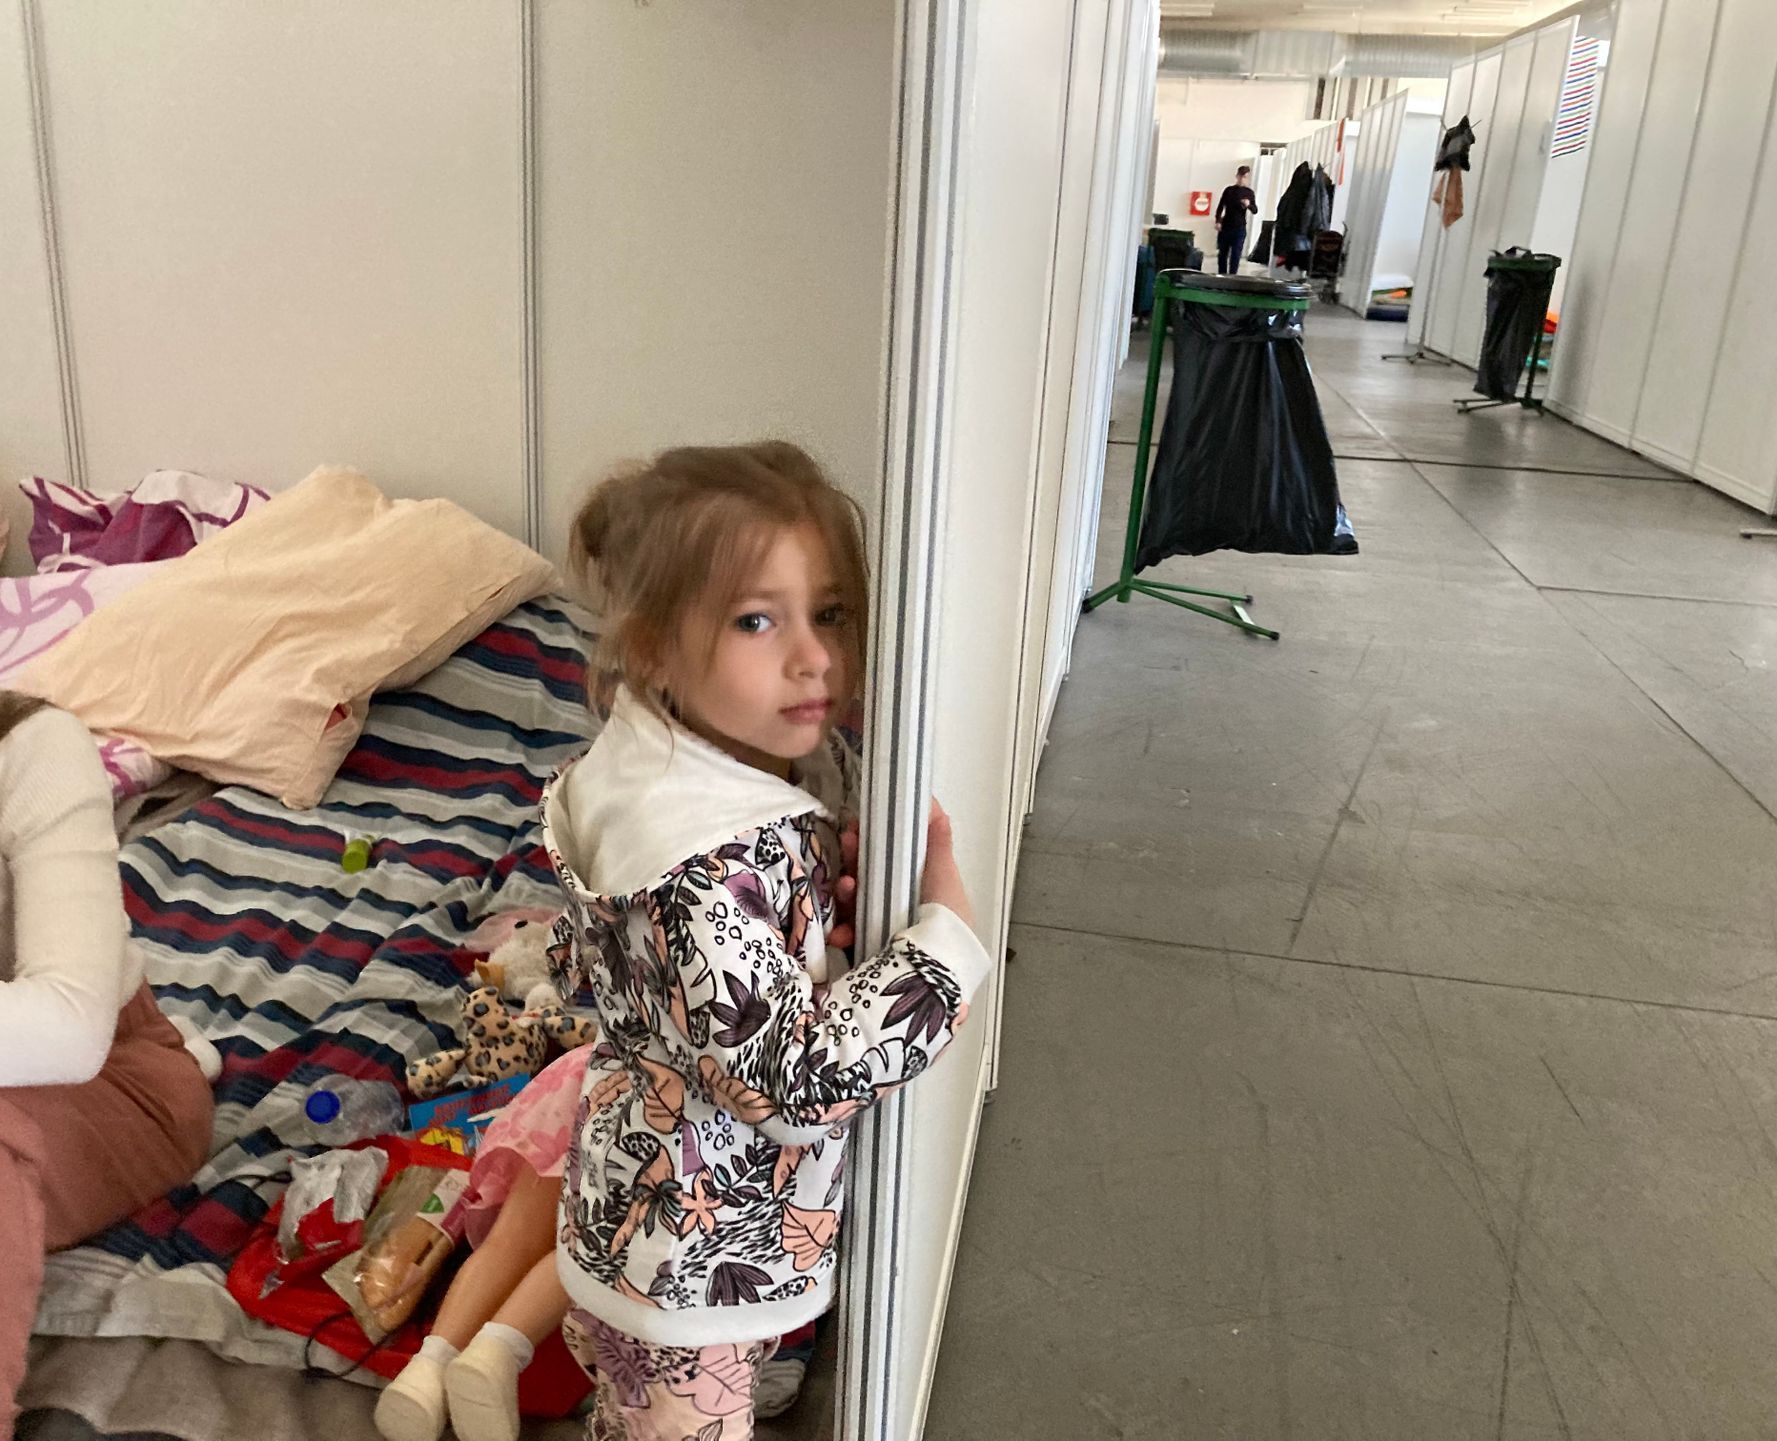 Malá Sofia je nachlazená, její máma má strach, aby v centru pro uprchlíky v Brně neonemocněla kvůli průvanu. Společně bydlí jen na matracích.